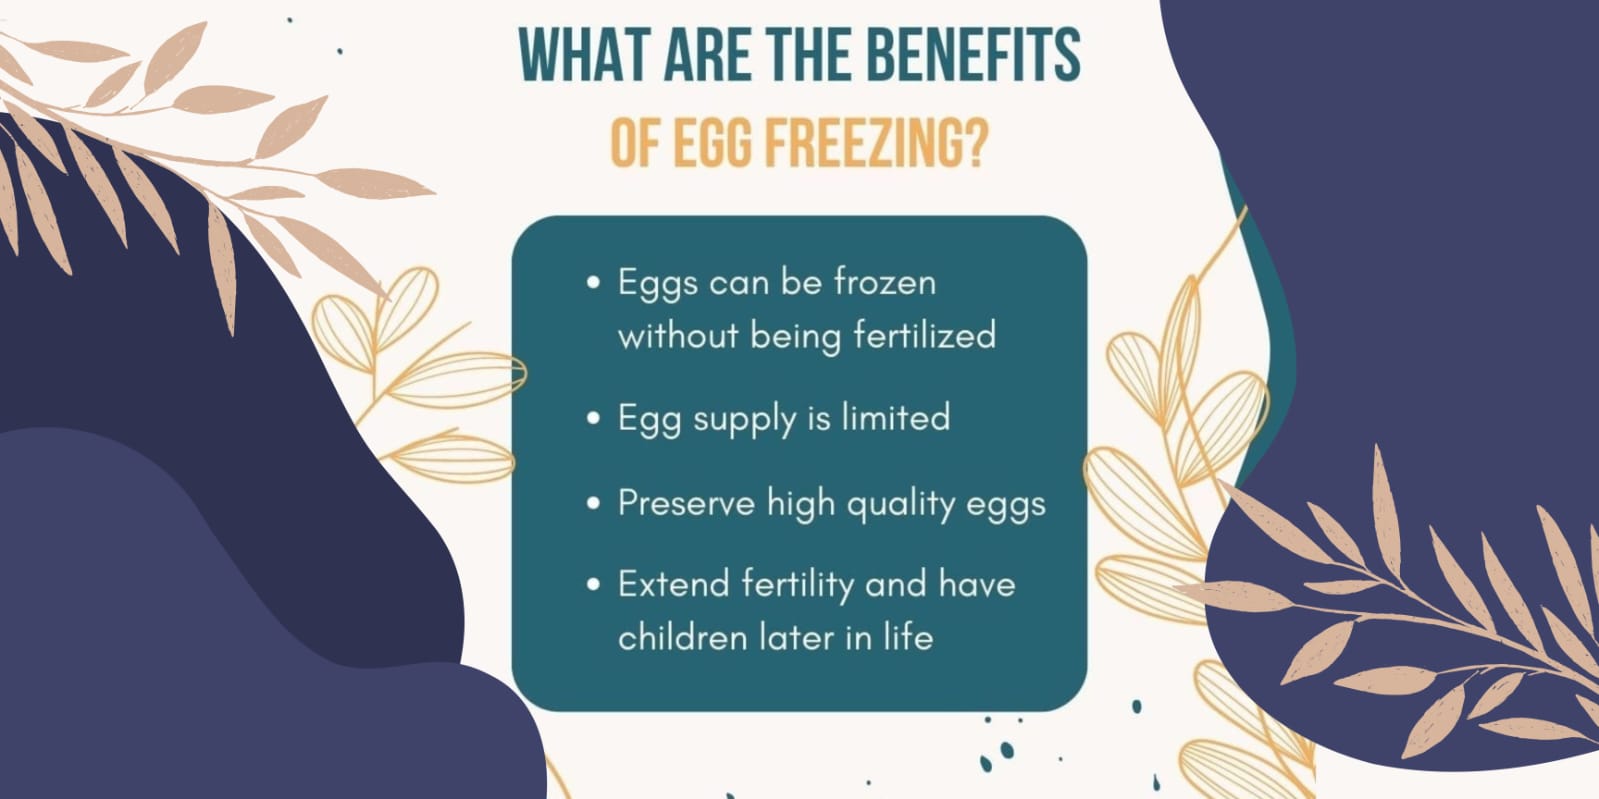 Benefits of Egg Freezing